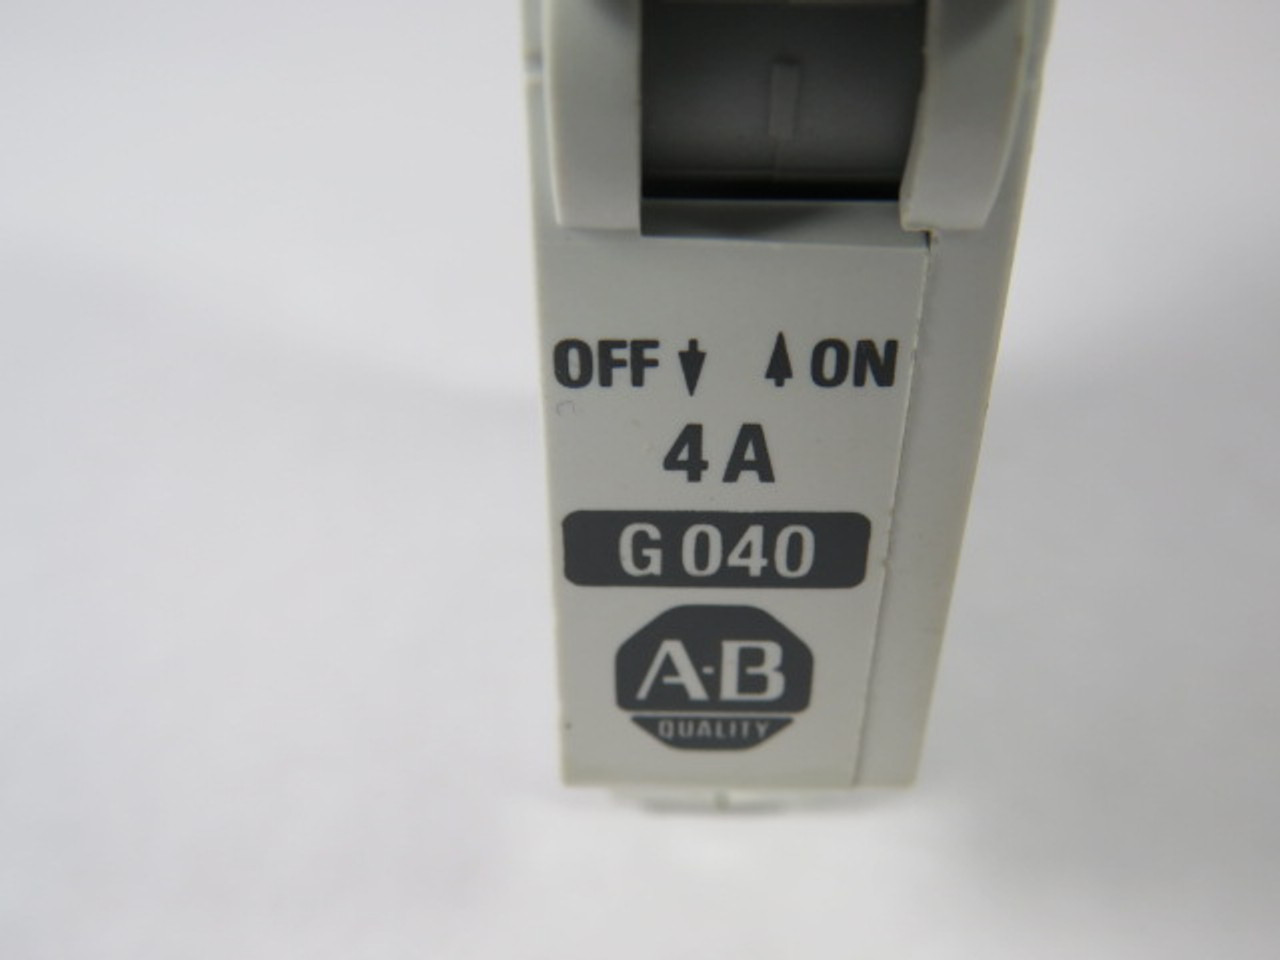 Allen-Bradley 1492-CB1-G040 Series B Circuit Breaker 4A 1-Pole USED